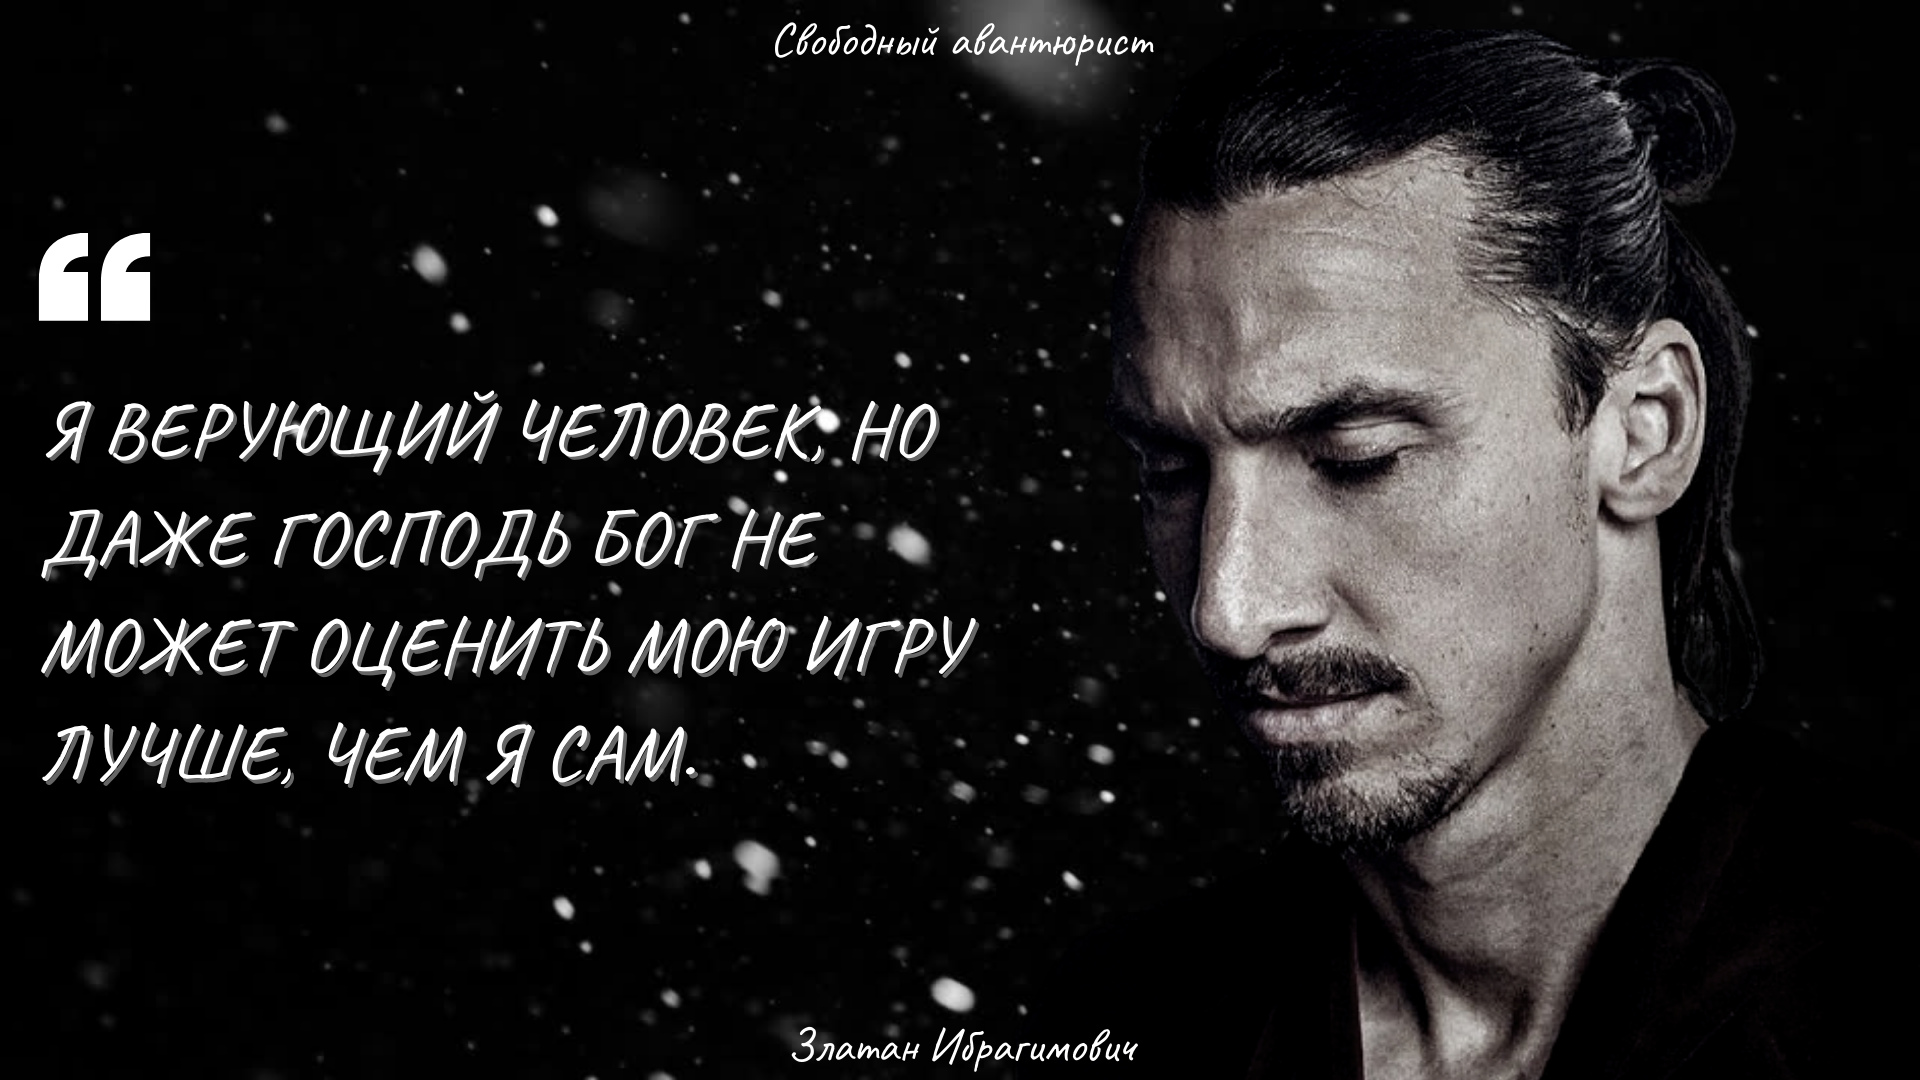 Златан Ибрагимович - дерзкие цитаты одного из лучших футболистов мира